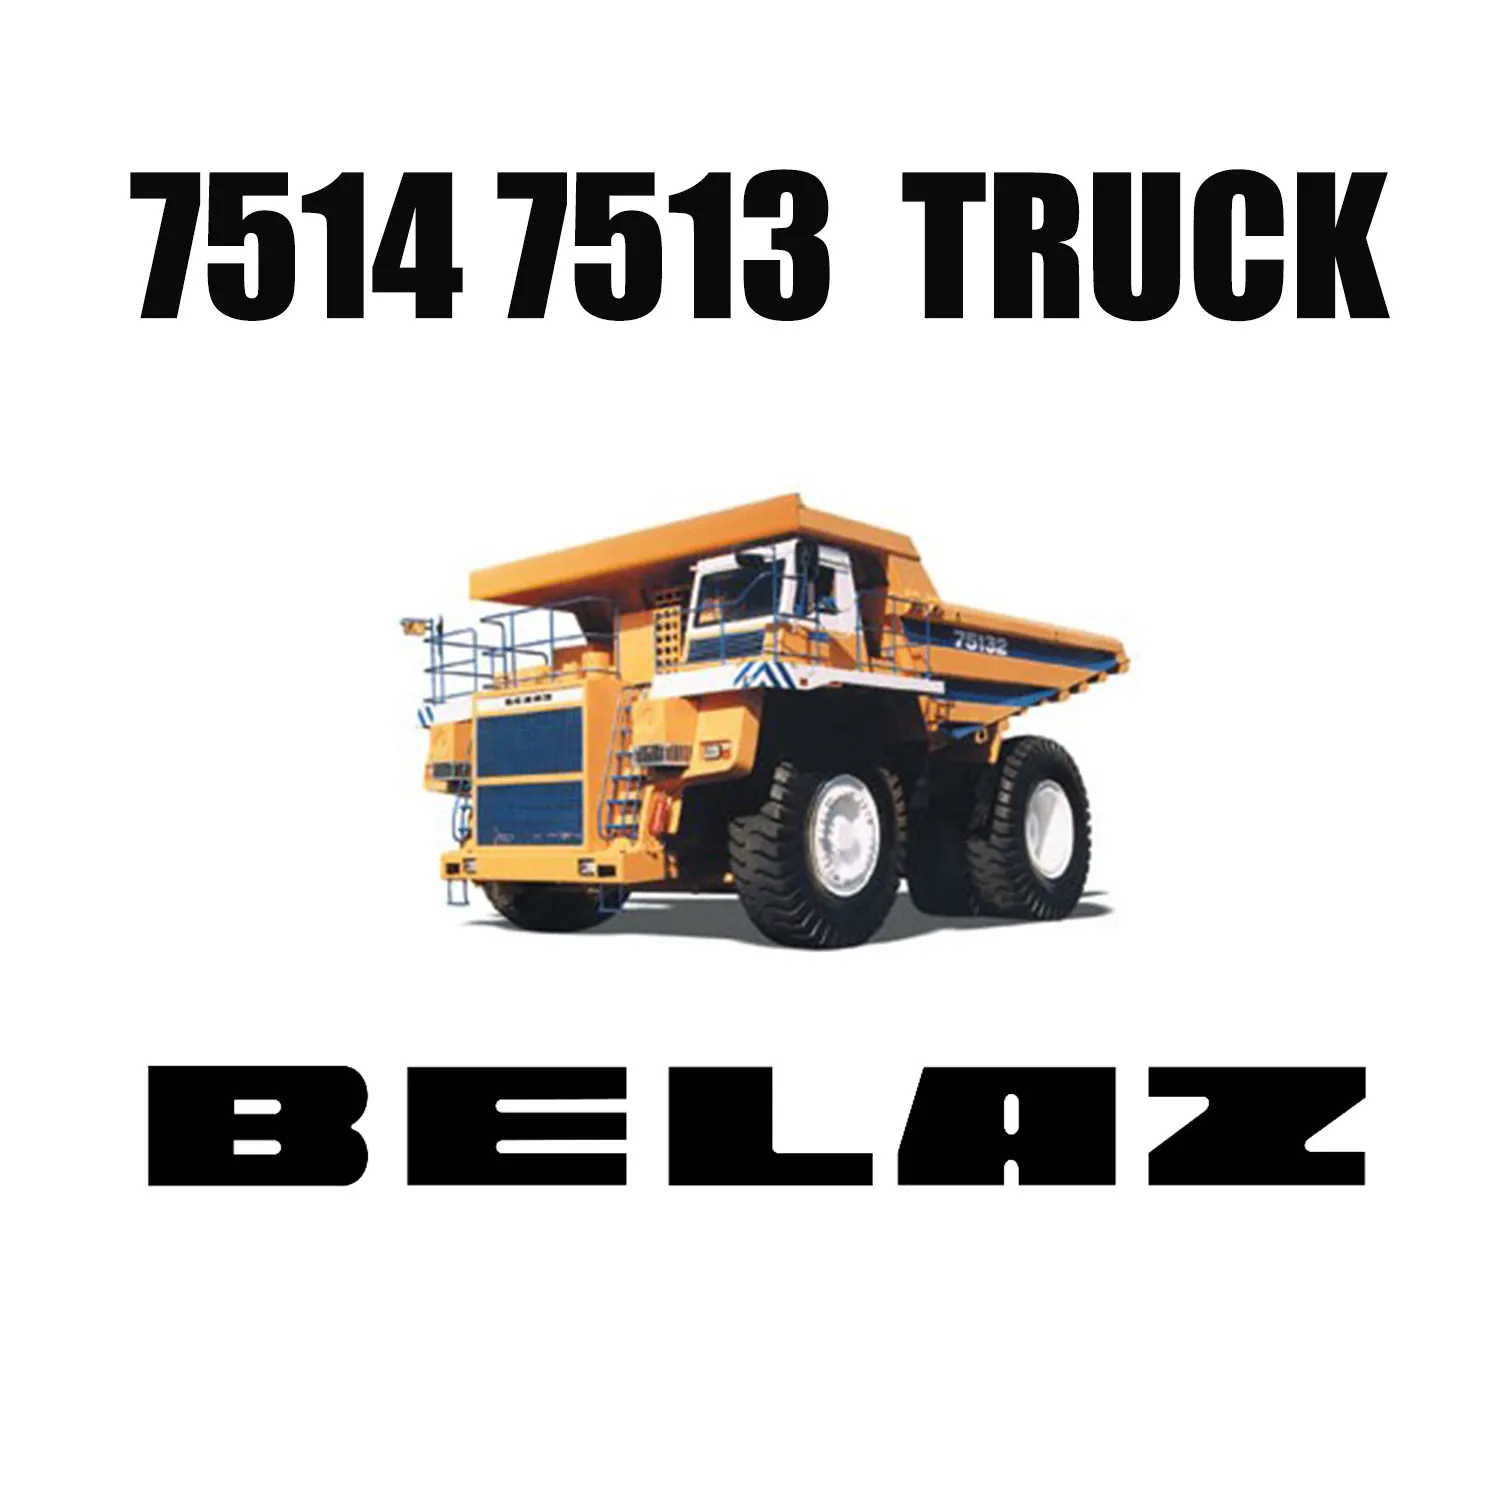 Giant 33.00R51 LUAN Mining OTR BANDEN voor BELAZ Dump Trucks 7514 7513